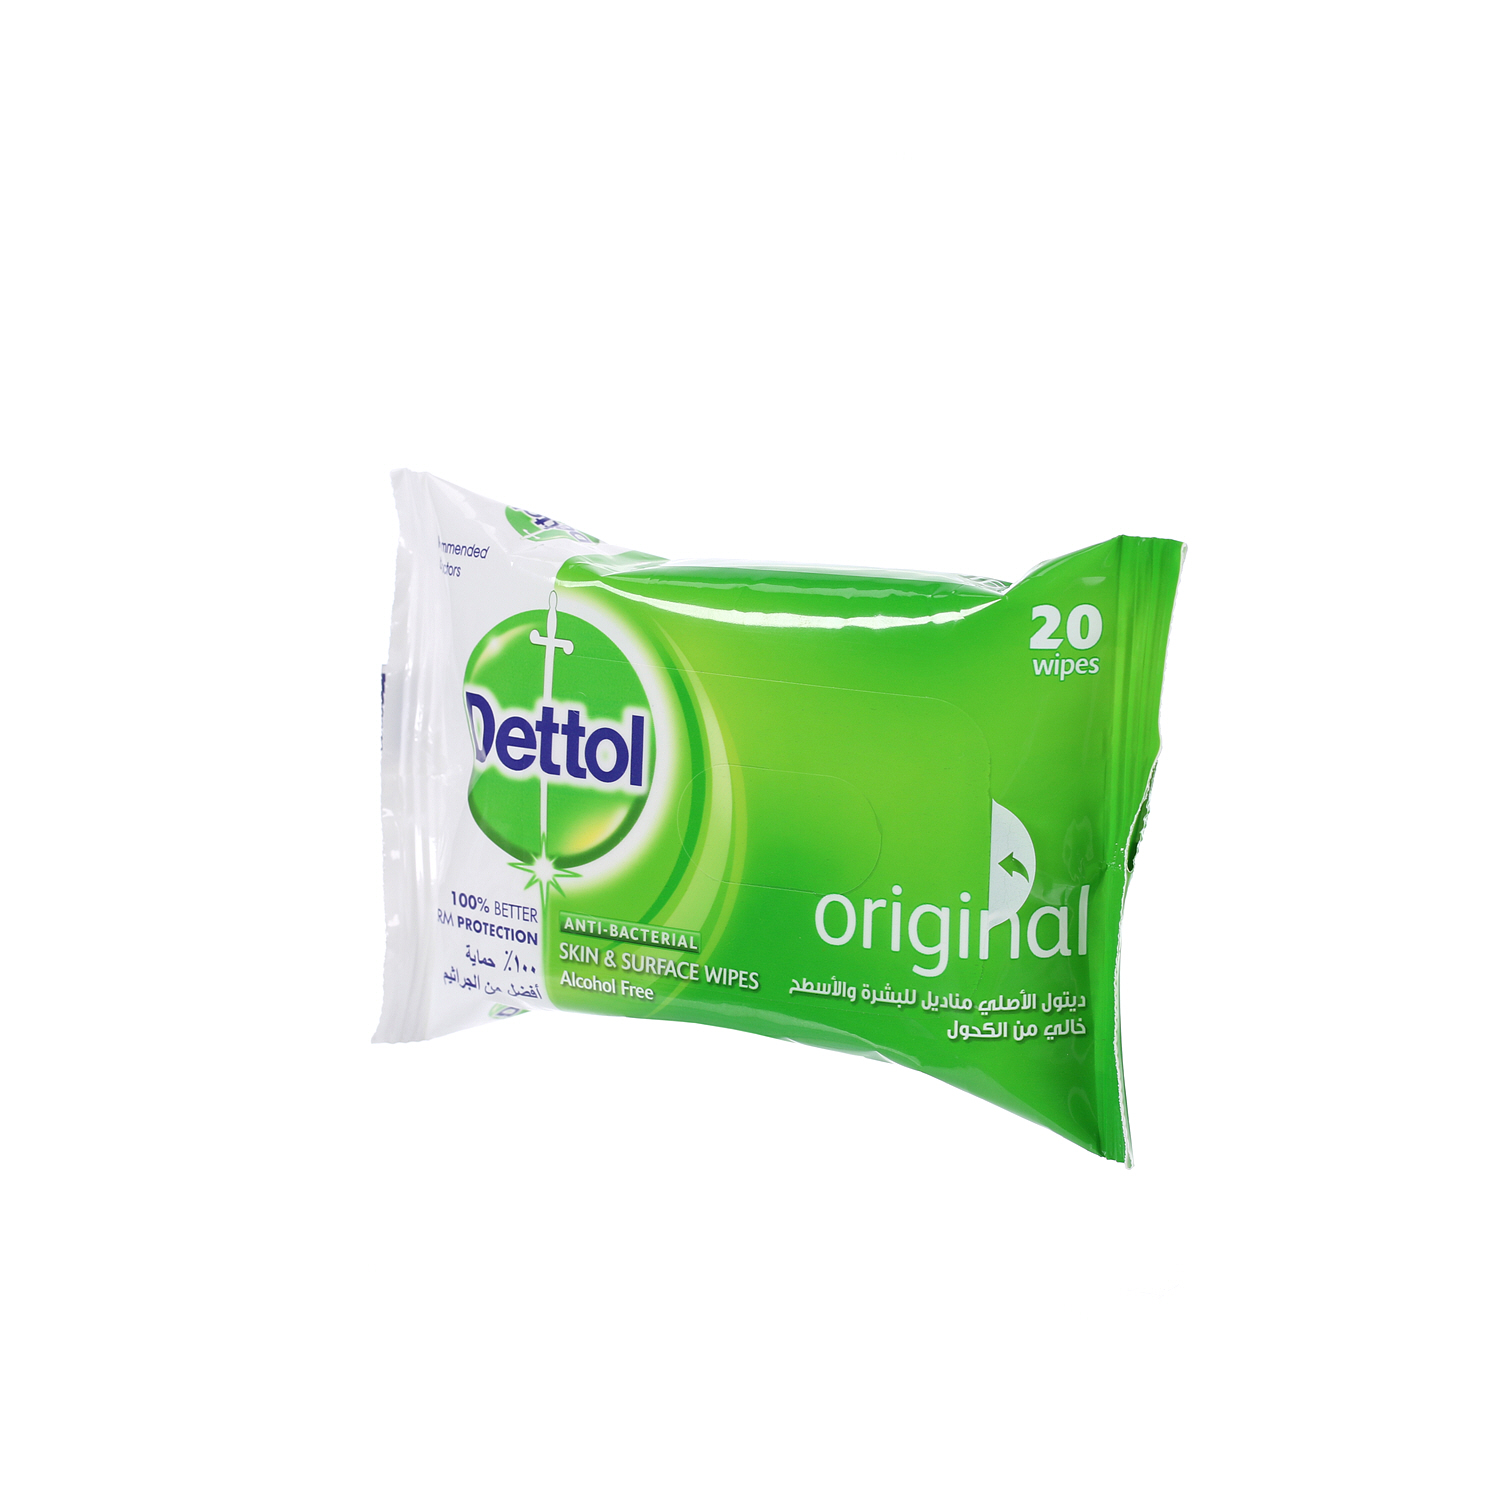 Dettol Original Antibacterial Skin 20 Wipes